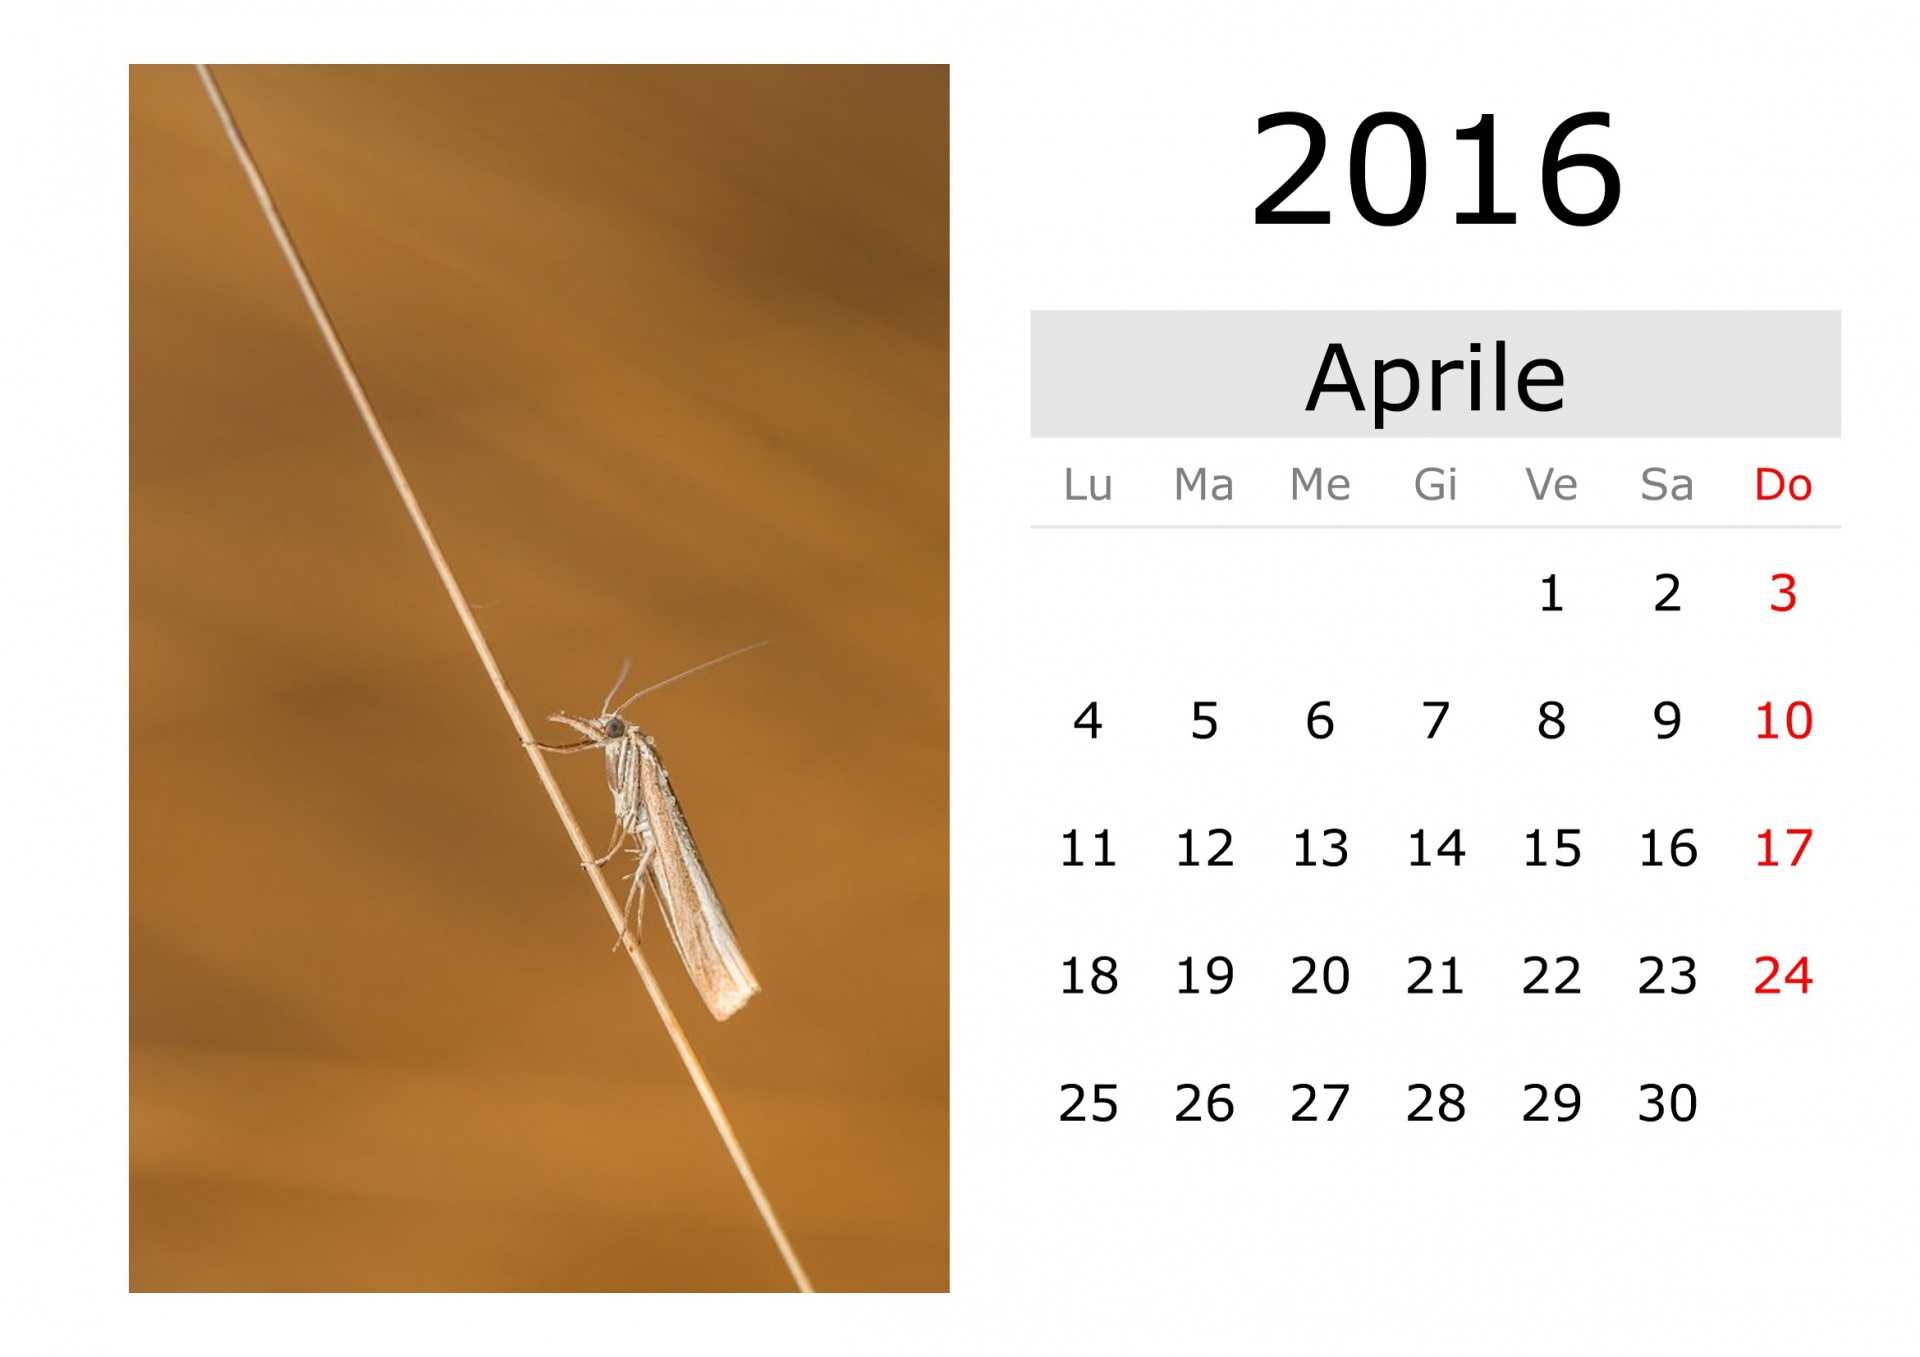 Calendar - April 2016 (Italian)